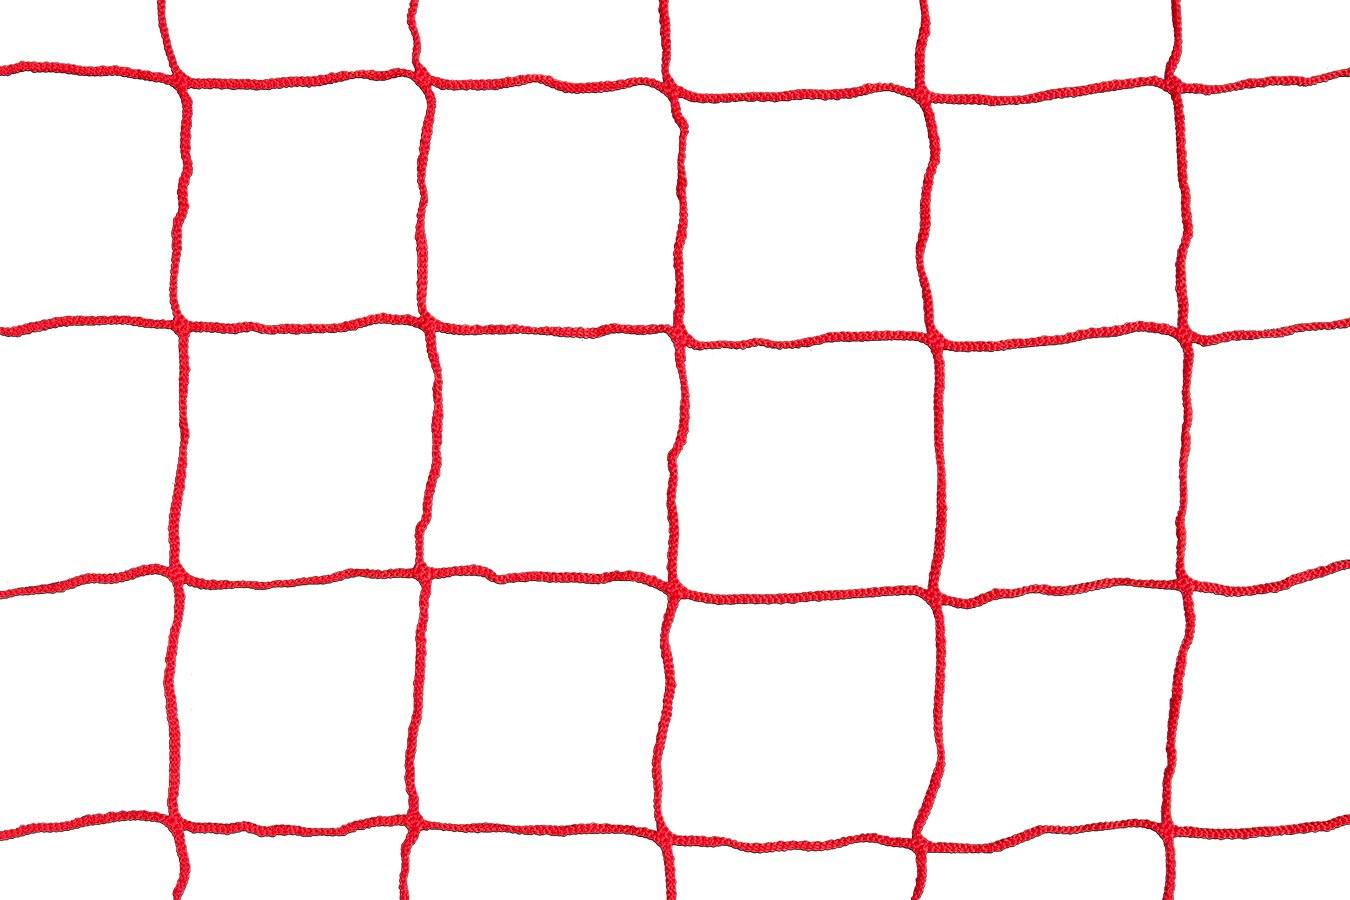 Kwikgoal 3mm Solid braid Knotless Box Net | 3B15 Nets Kwikgoal Red 